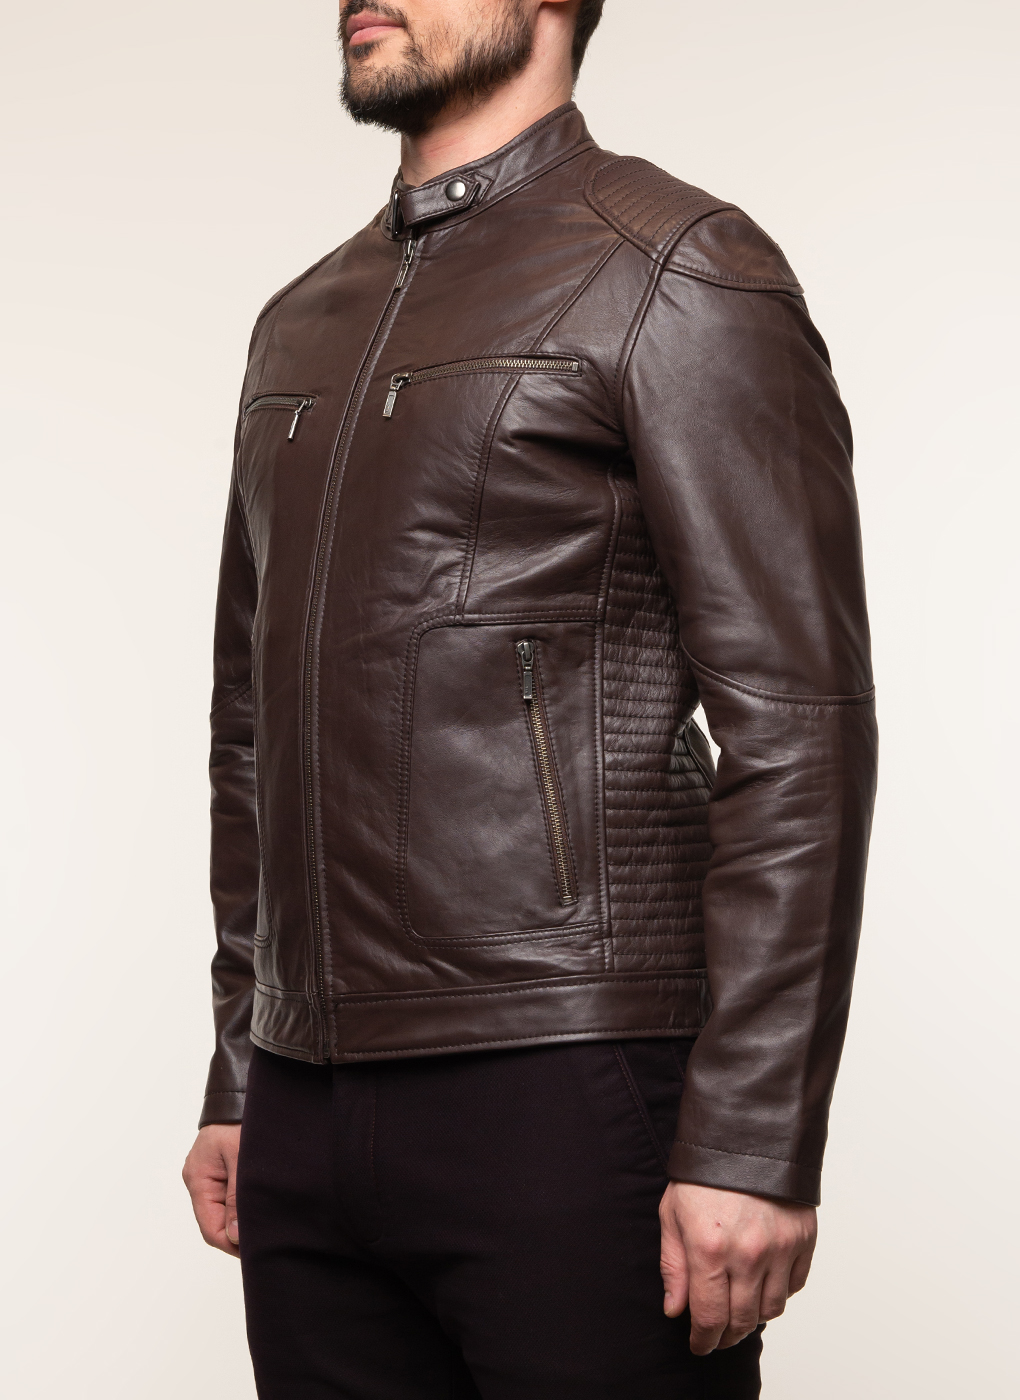 Кожаная куртка мужская Каляев 62648 коричневая 52 RU